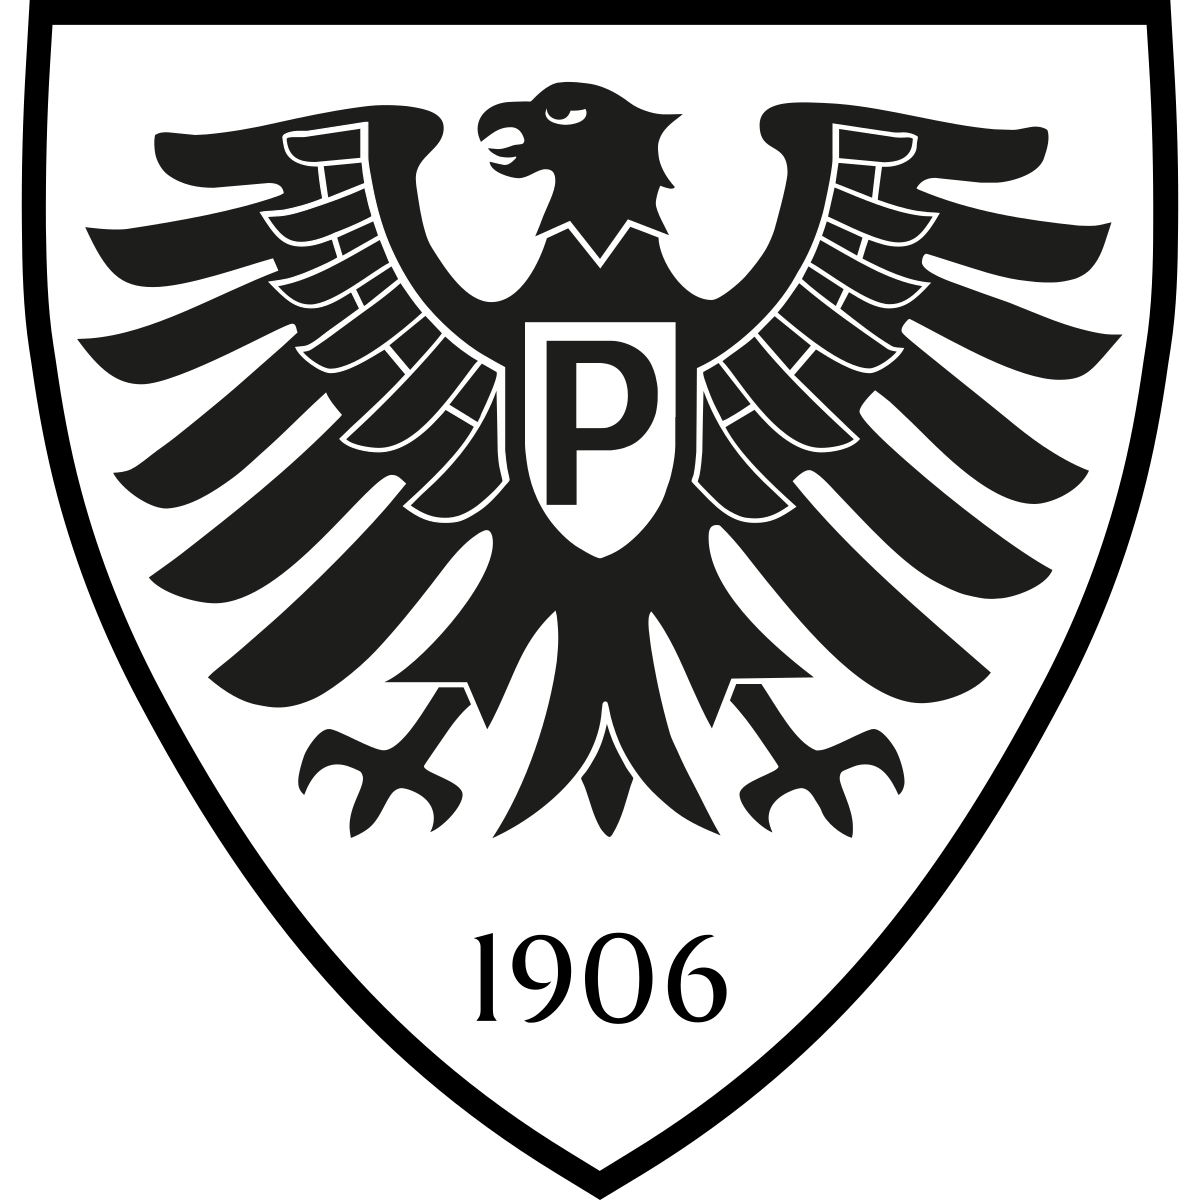 Sportclub Preußen 1906 e.V. Münster - second team team logo